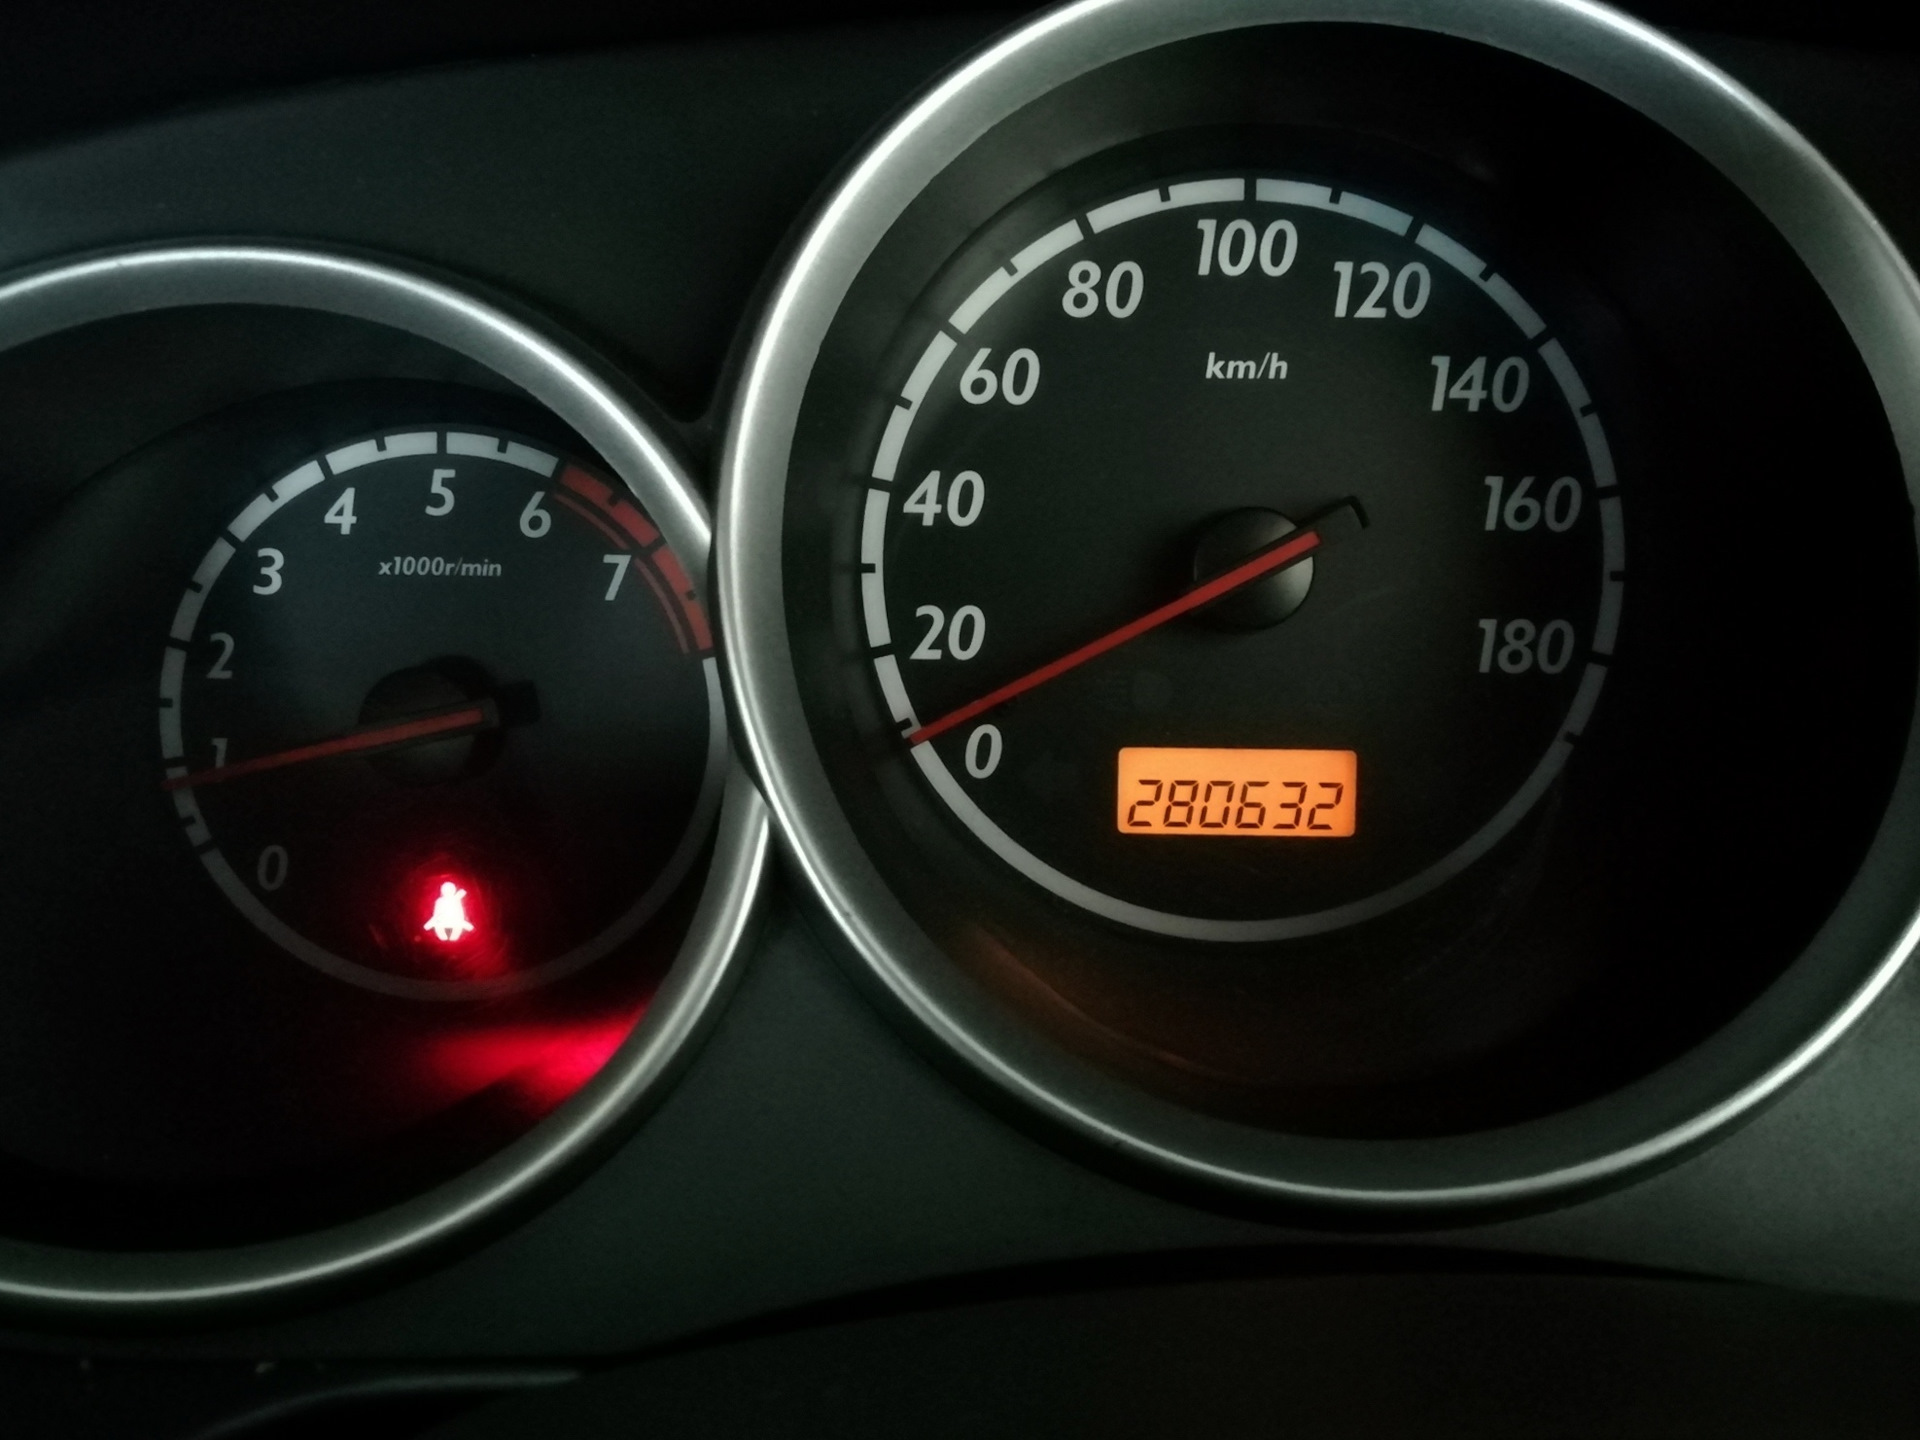 Указатель расхода топлива Хонда фит 1.3 на 100 км. 6300 Км. Масло хонда фит 1.3 вариатор